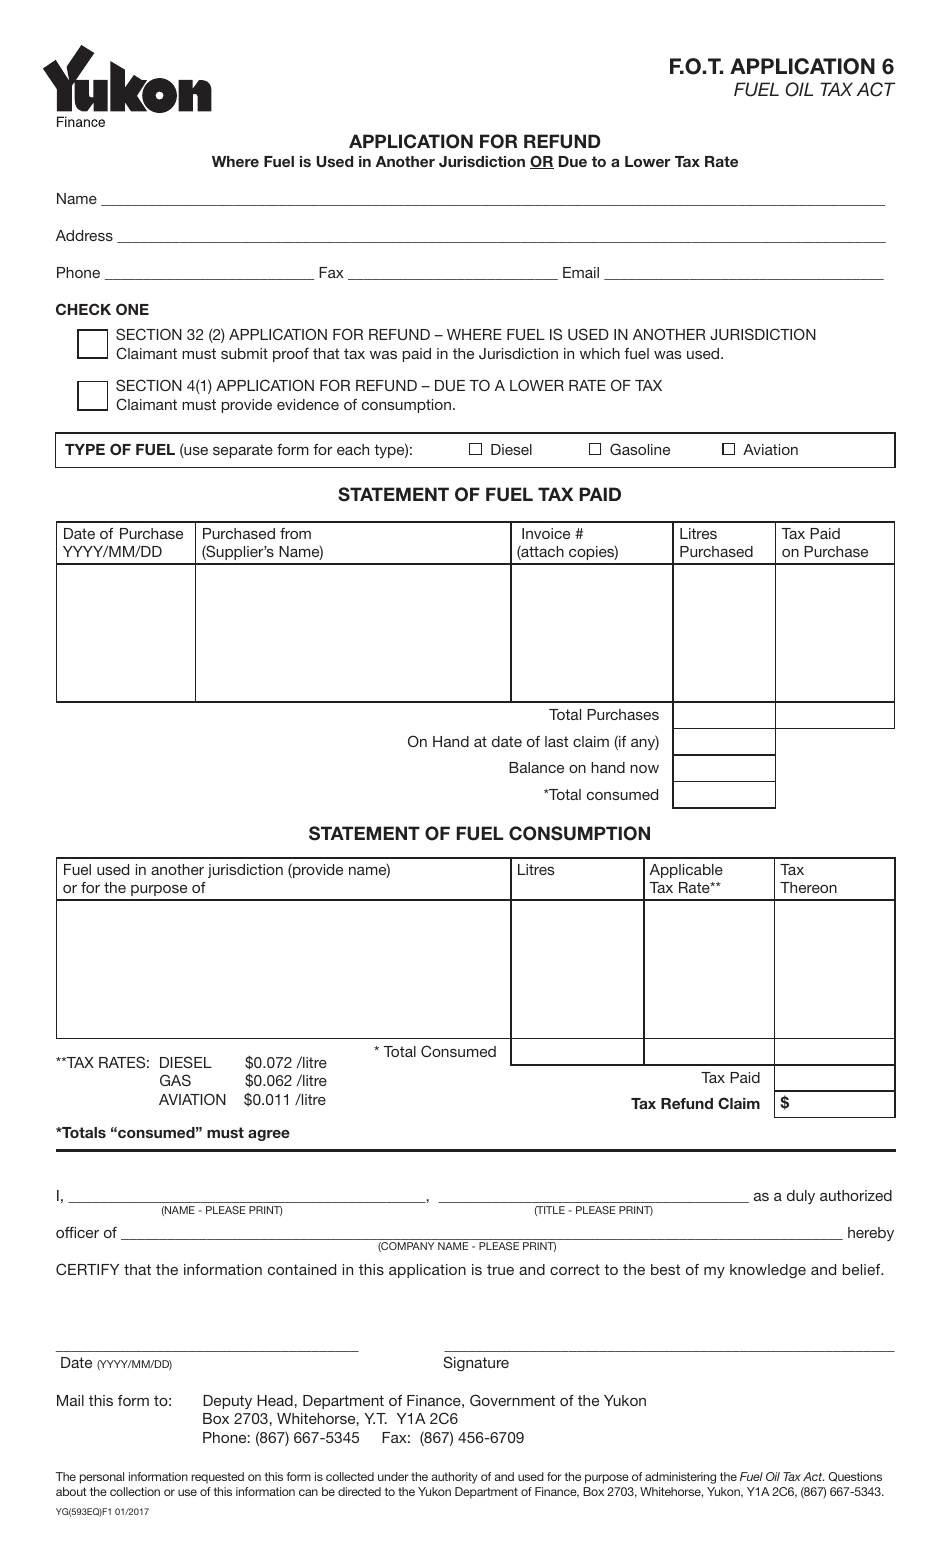 Form YG593 Application for Refund Form - Yukon, Canada, Page 1